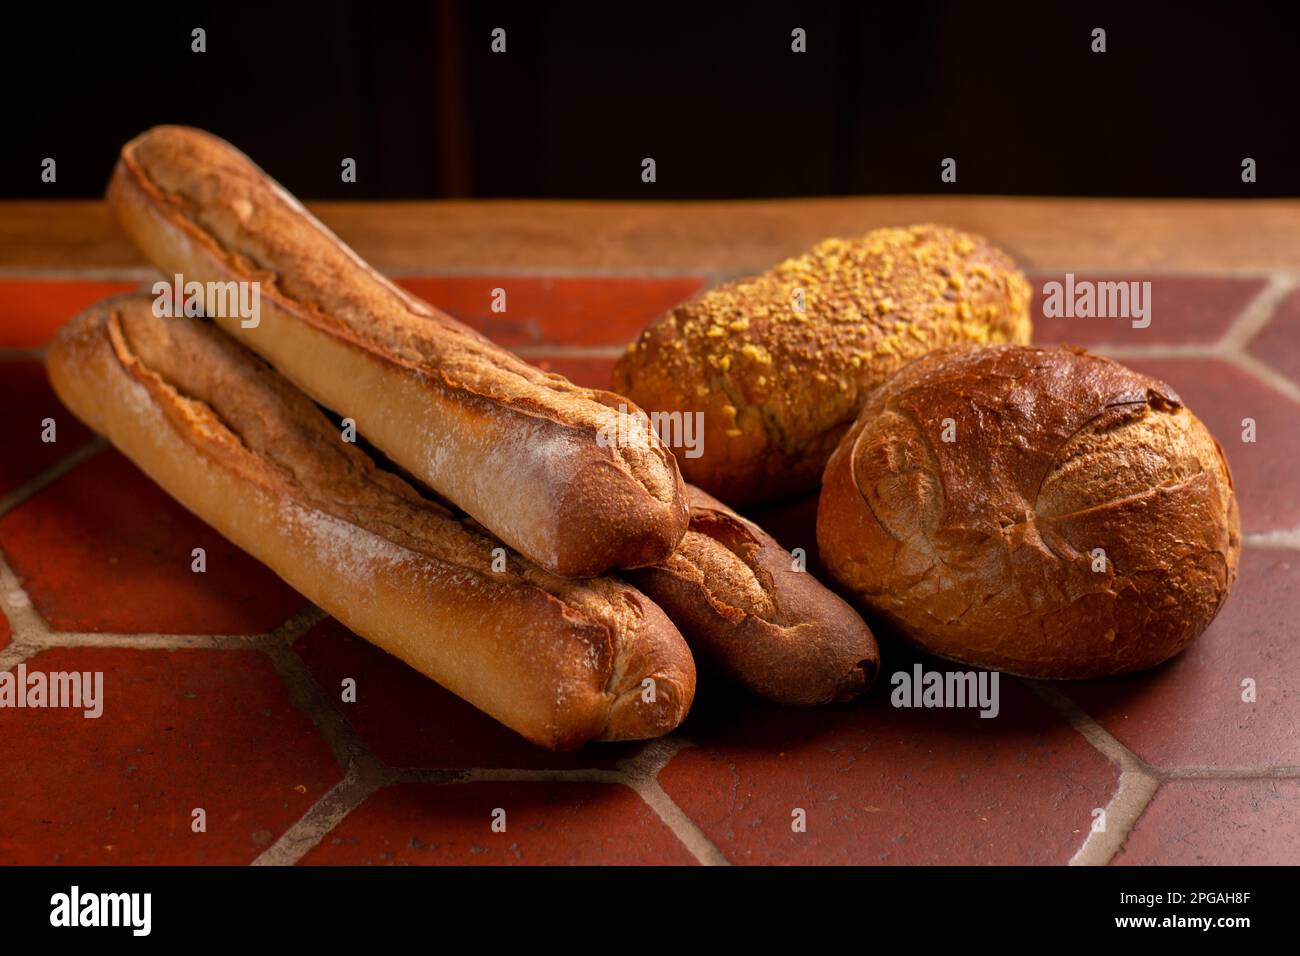 Différents types de pain français. Baguettes, pain aux graines sur la table de cuisine. Banque D'Images